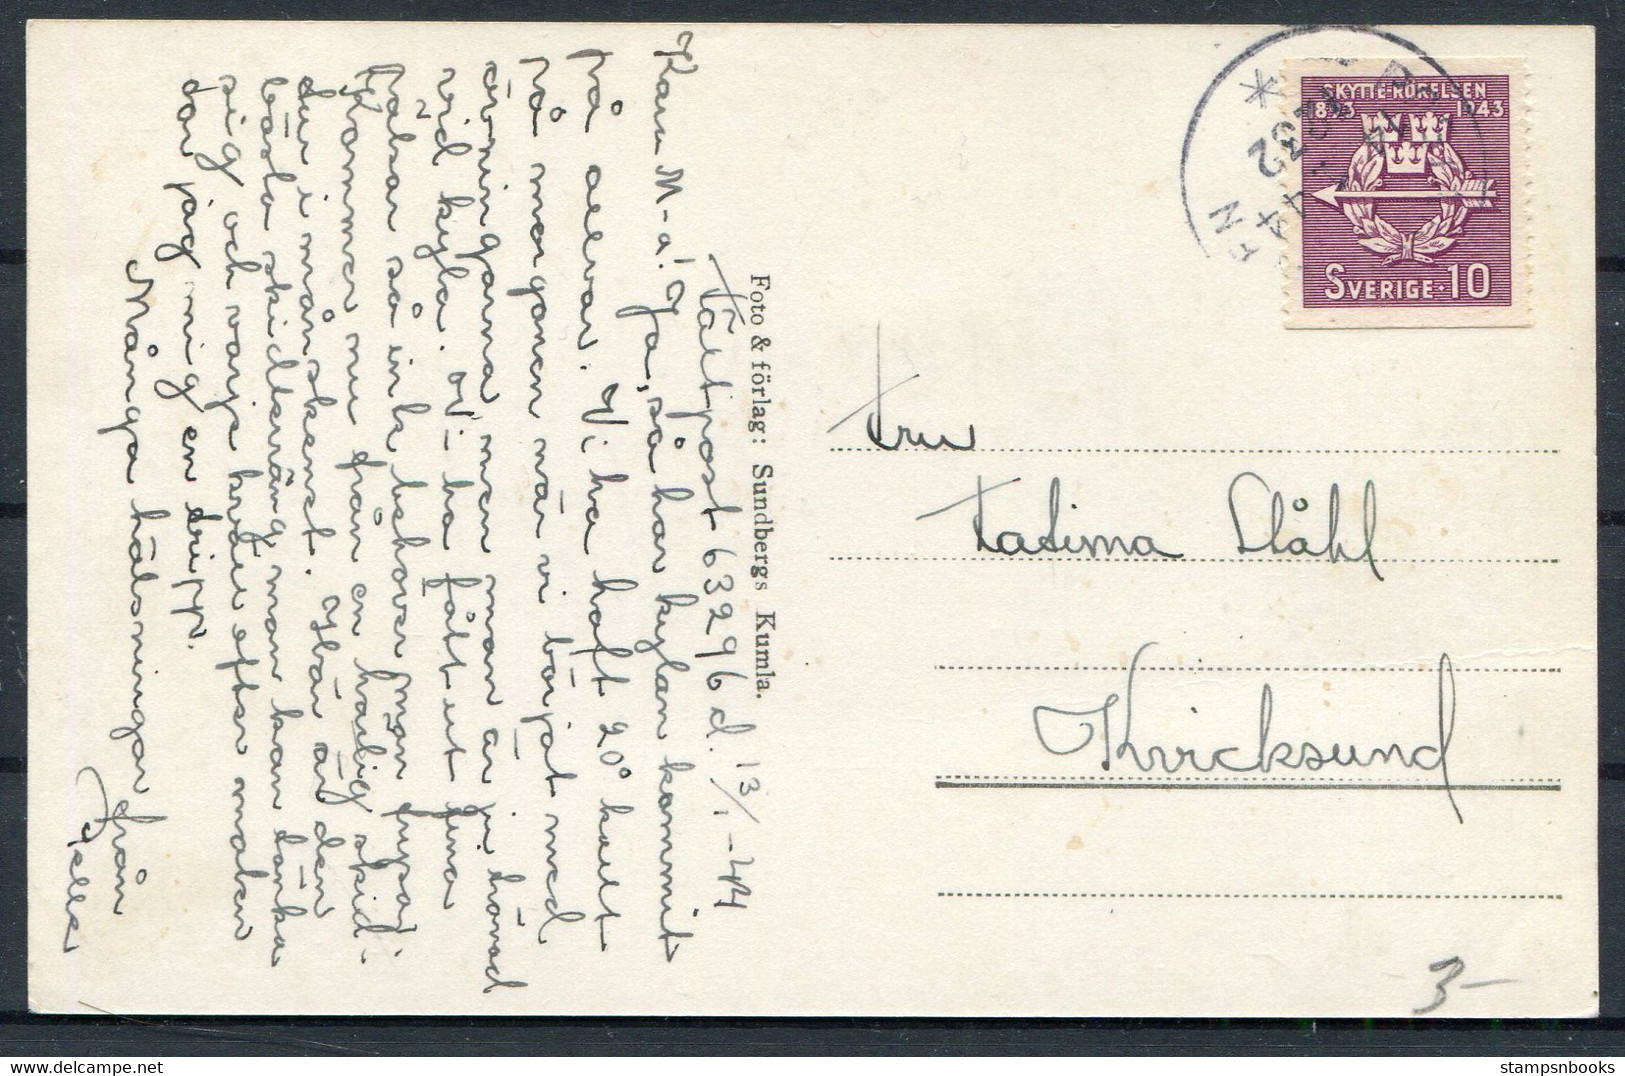 1944 Sweden Karlsson Willie Bergstrom Postcard, Postanstalen 1232 - Militaires